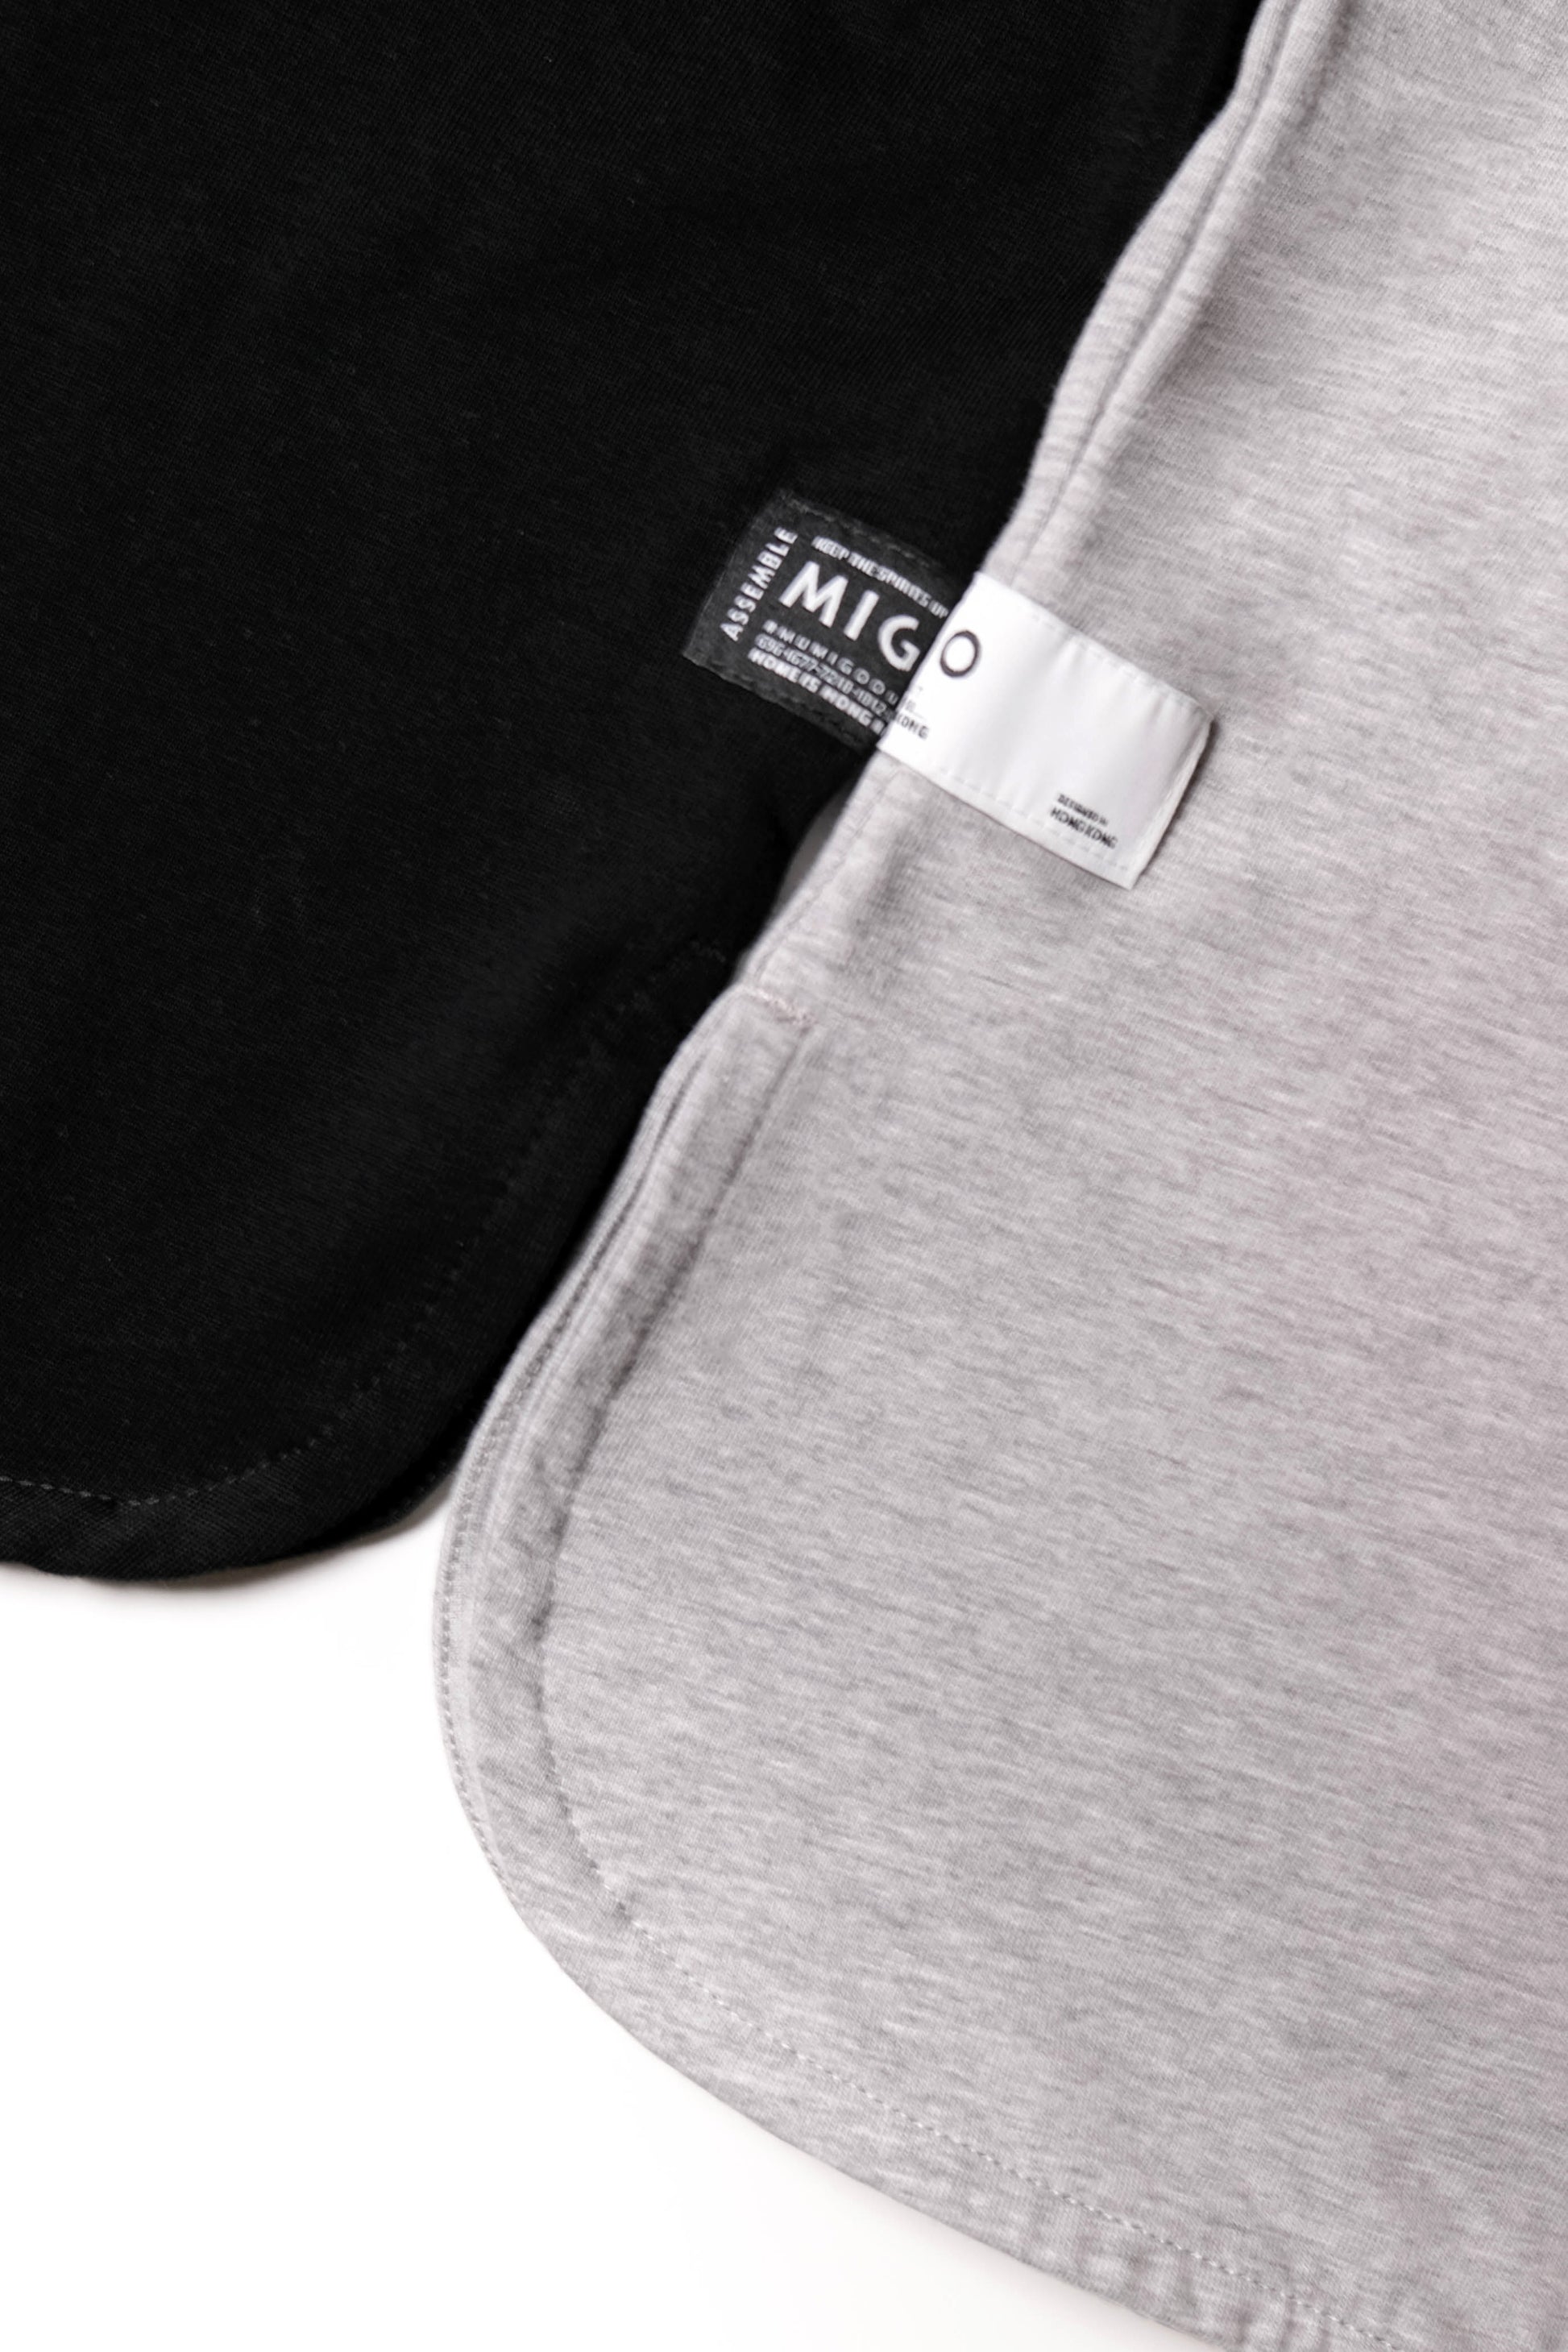 Shoulder Patch Pocket Tee (Black) - [MIGO Menswear]